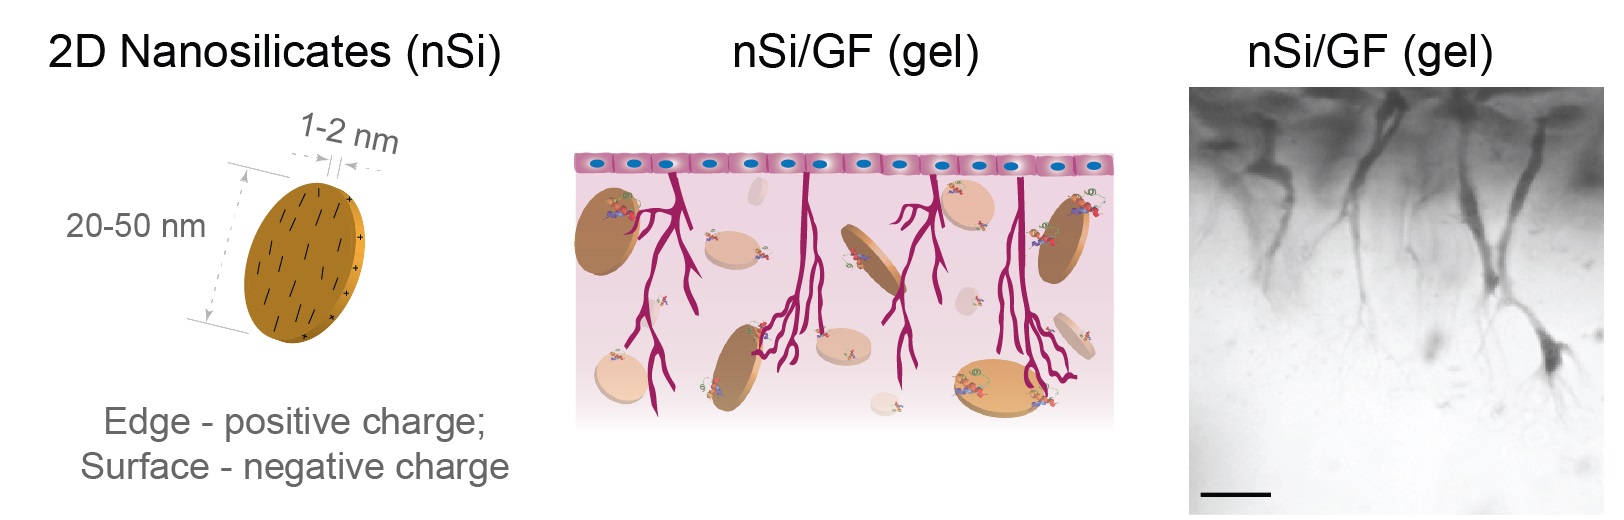 angiogenesis-fig1